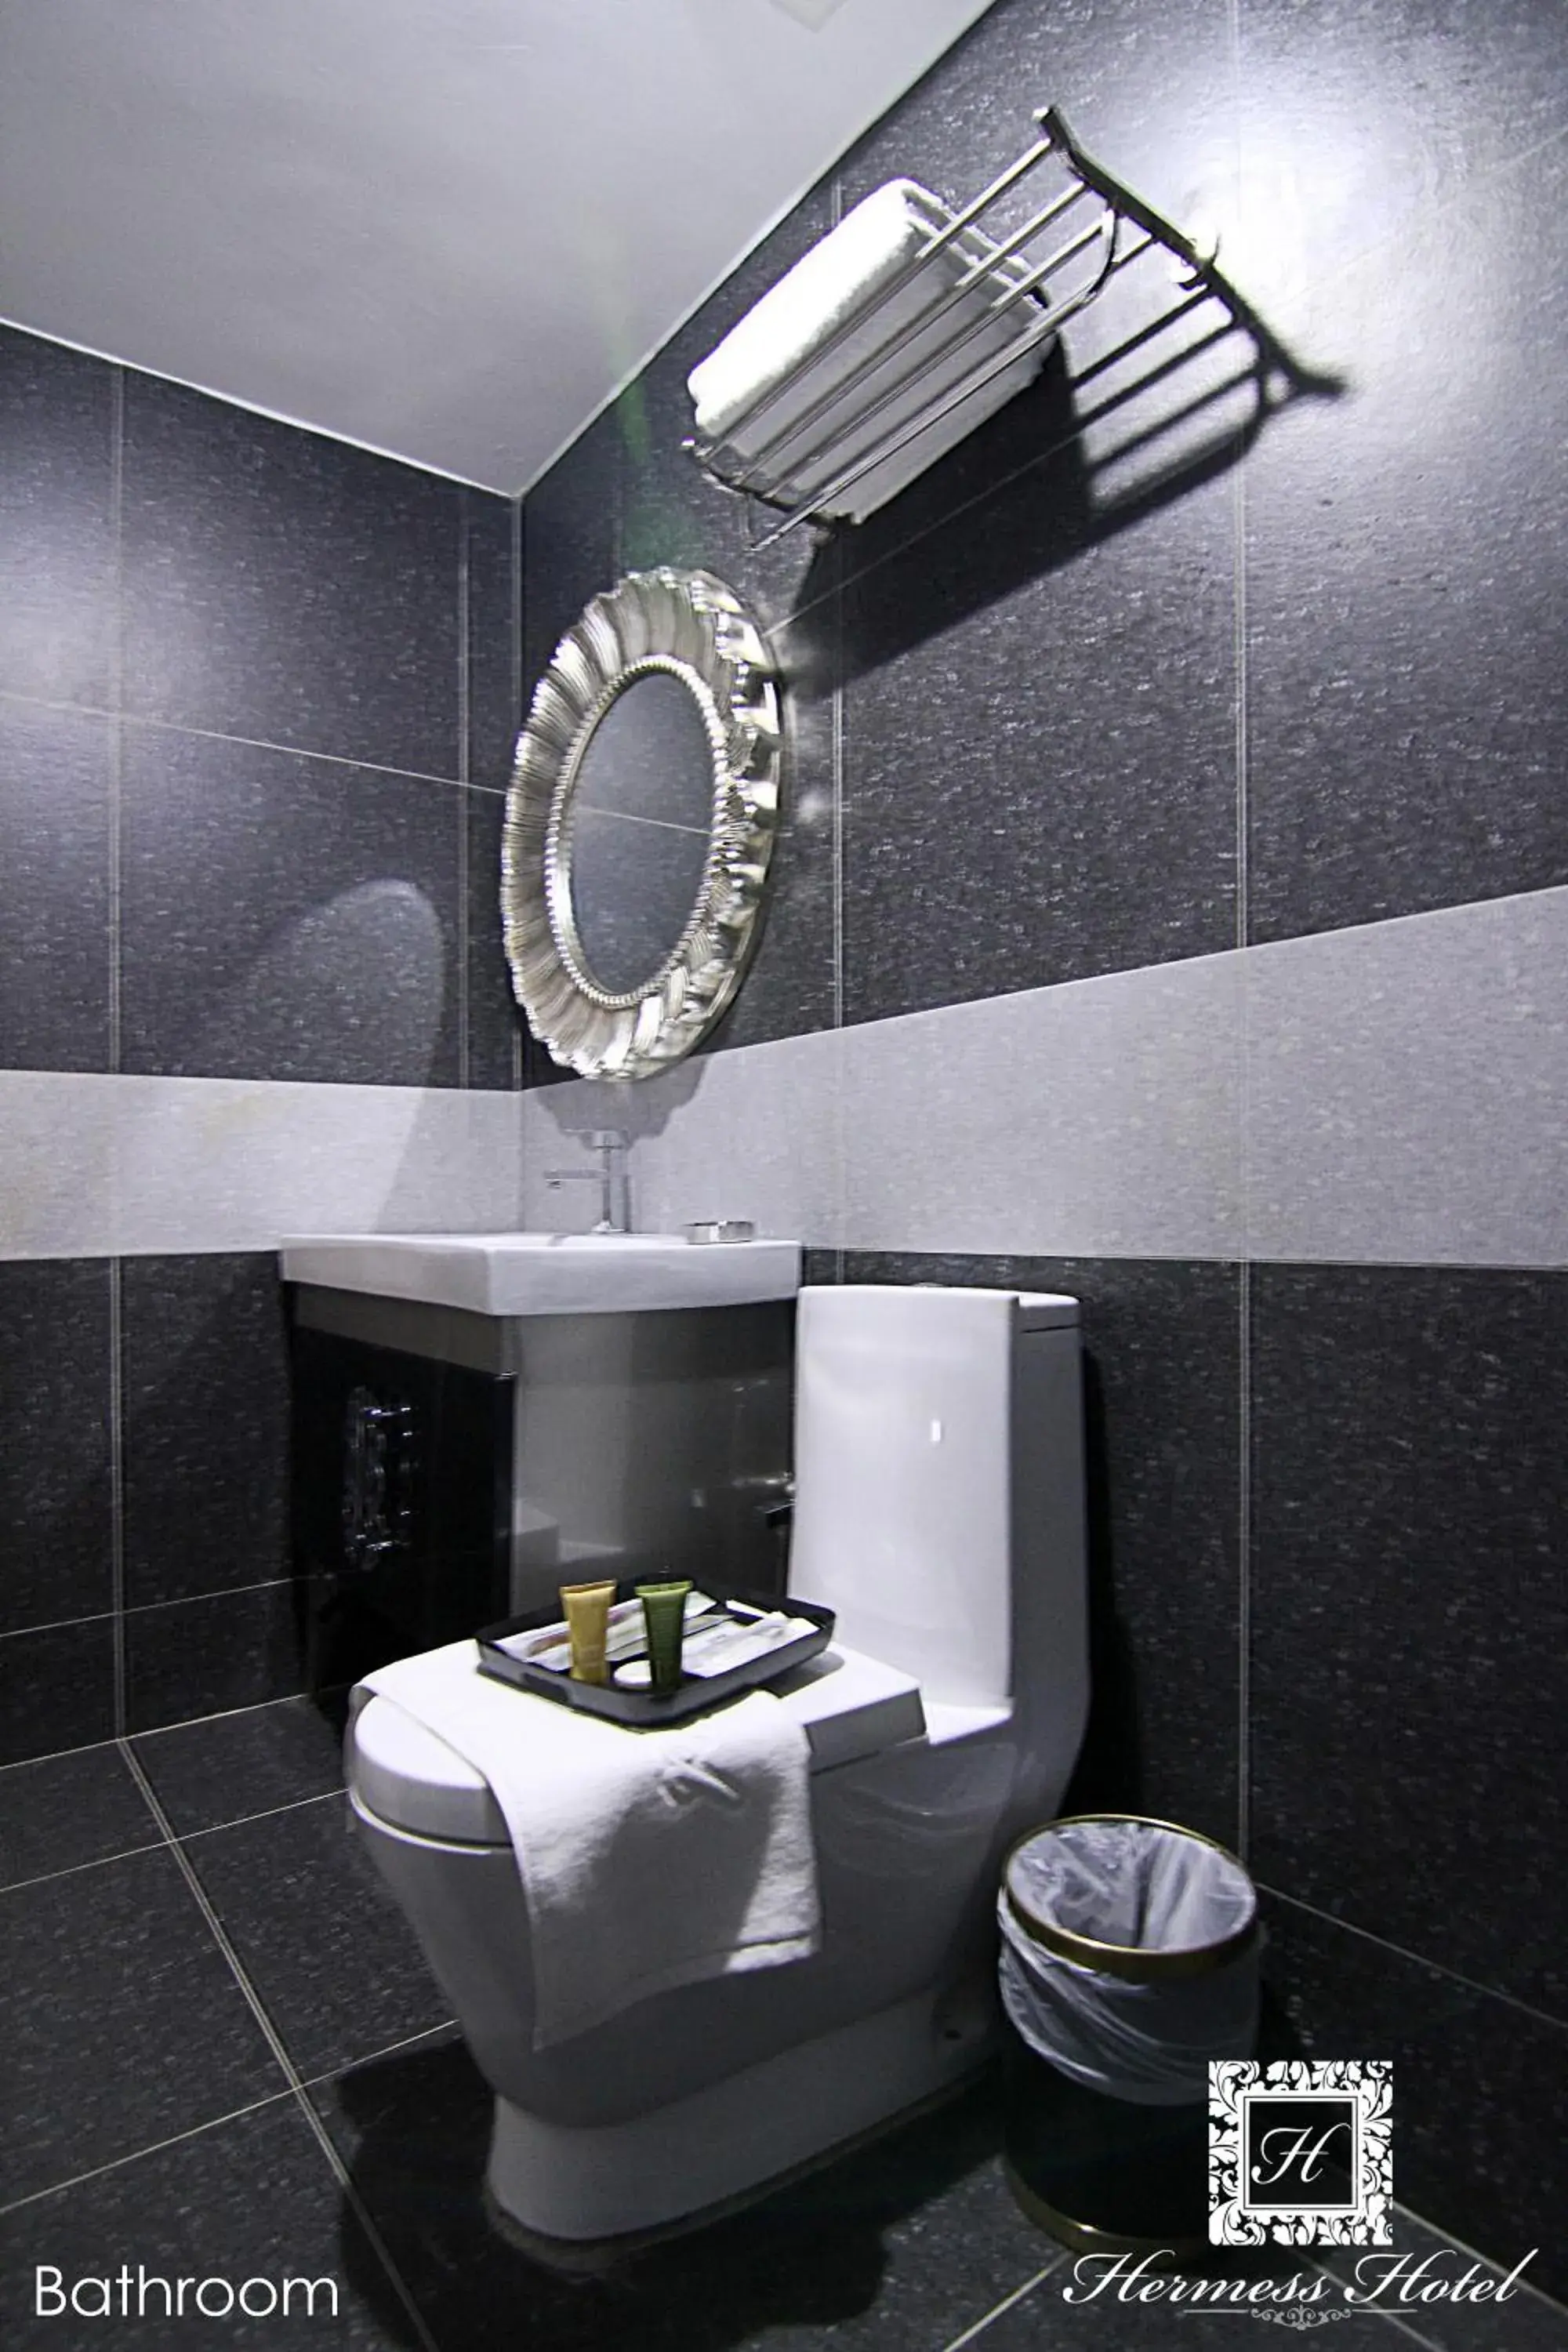 Toilet, Bathroom in Hermess Hotel